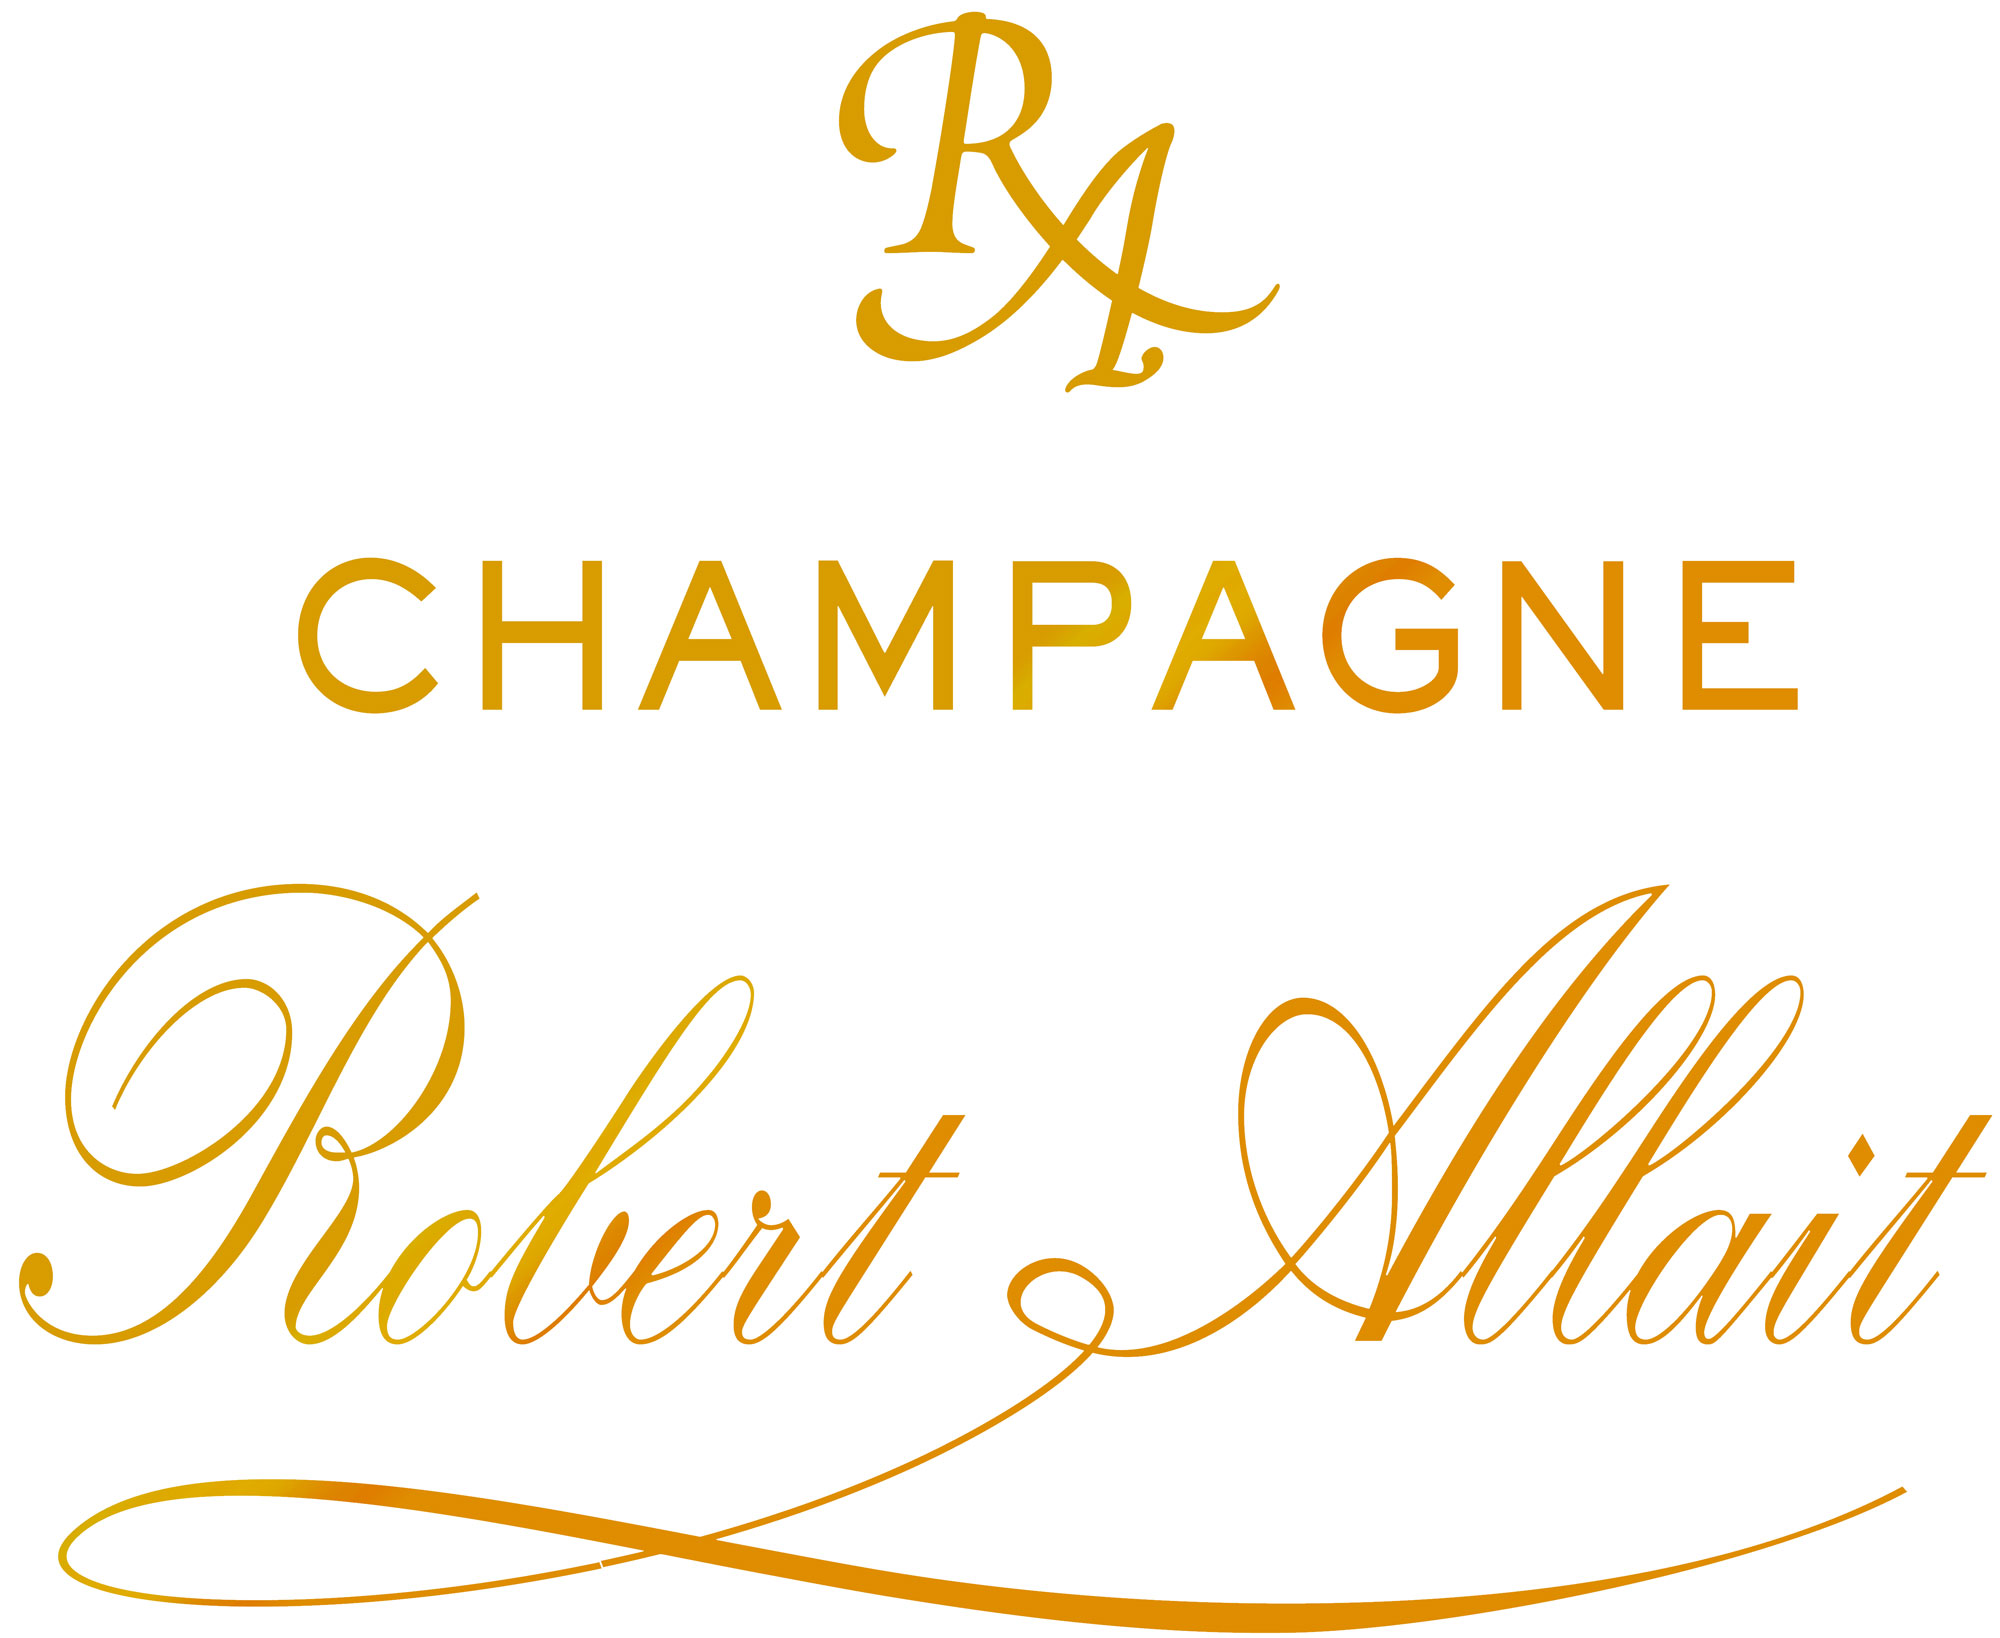 Champagne Robert-Allait